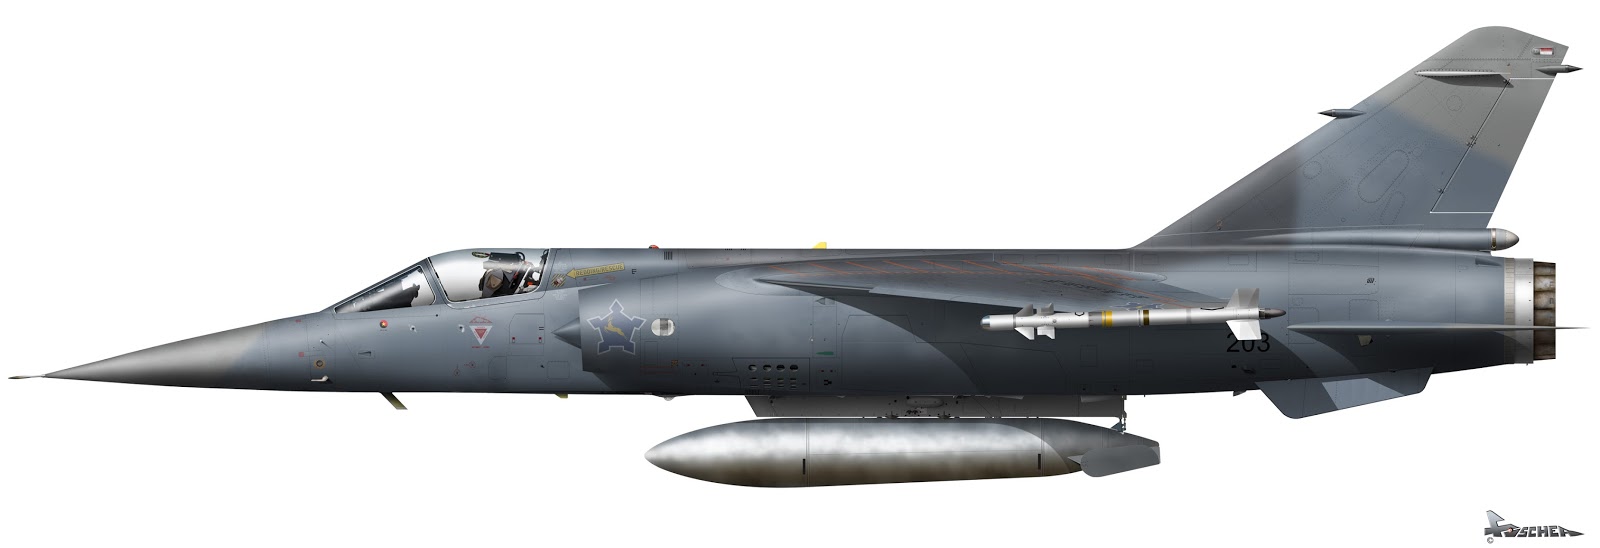 Mirage+F1+CZ_203_1982_Afrique+du+Sud.jpg